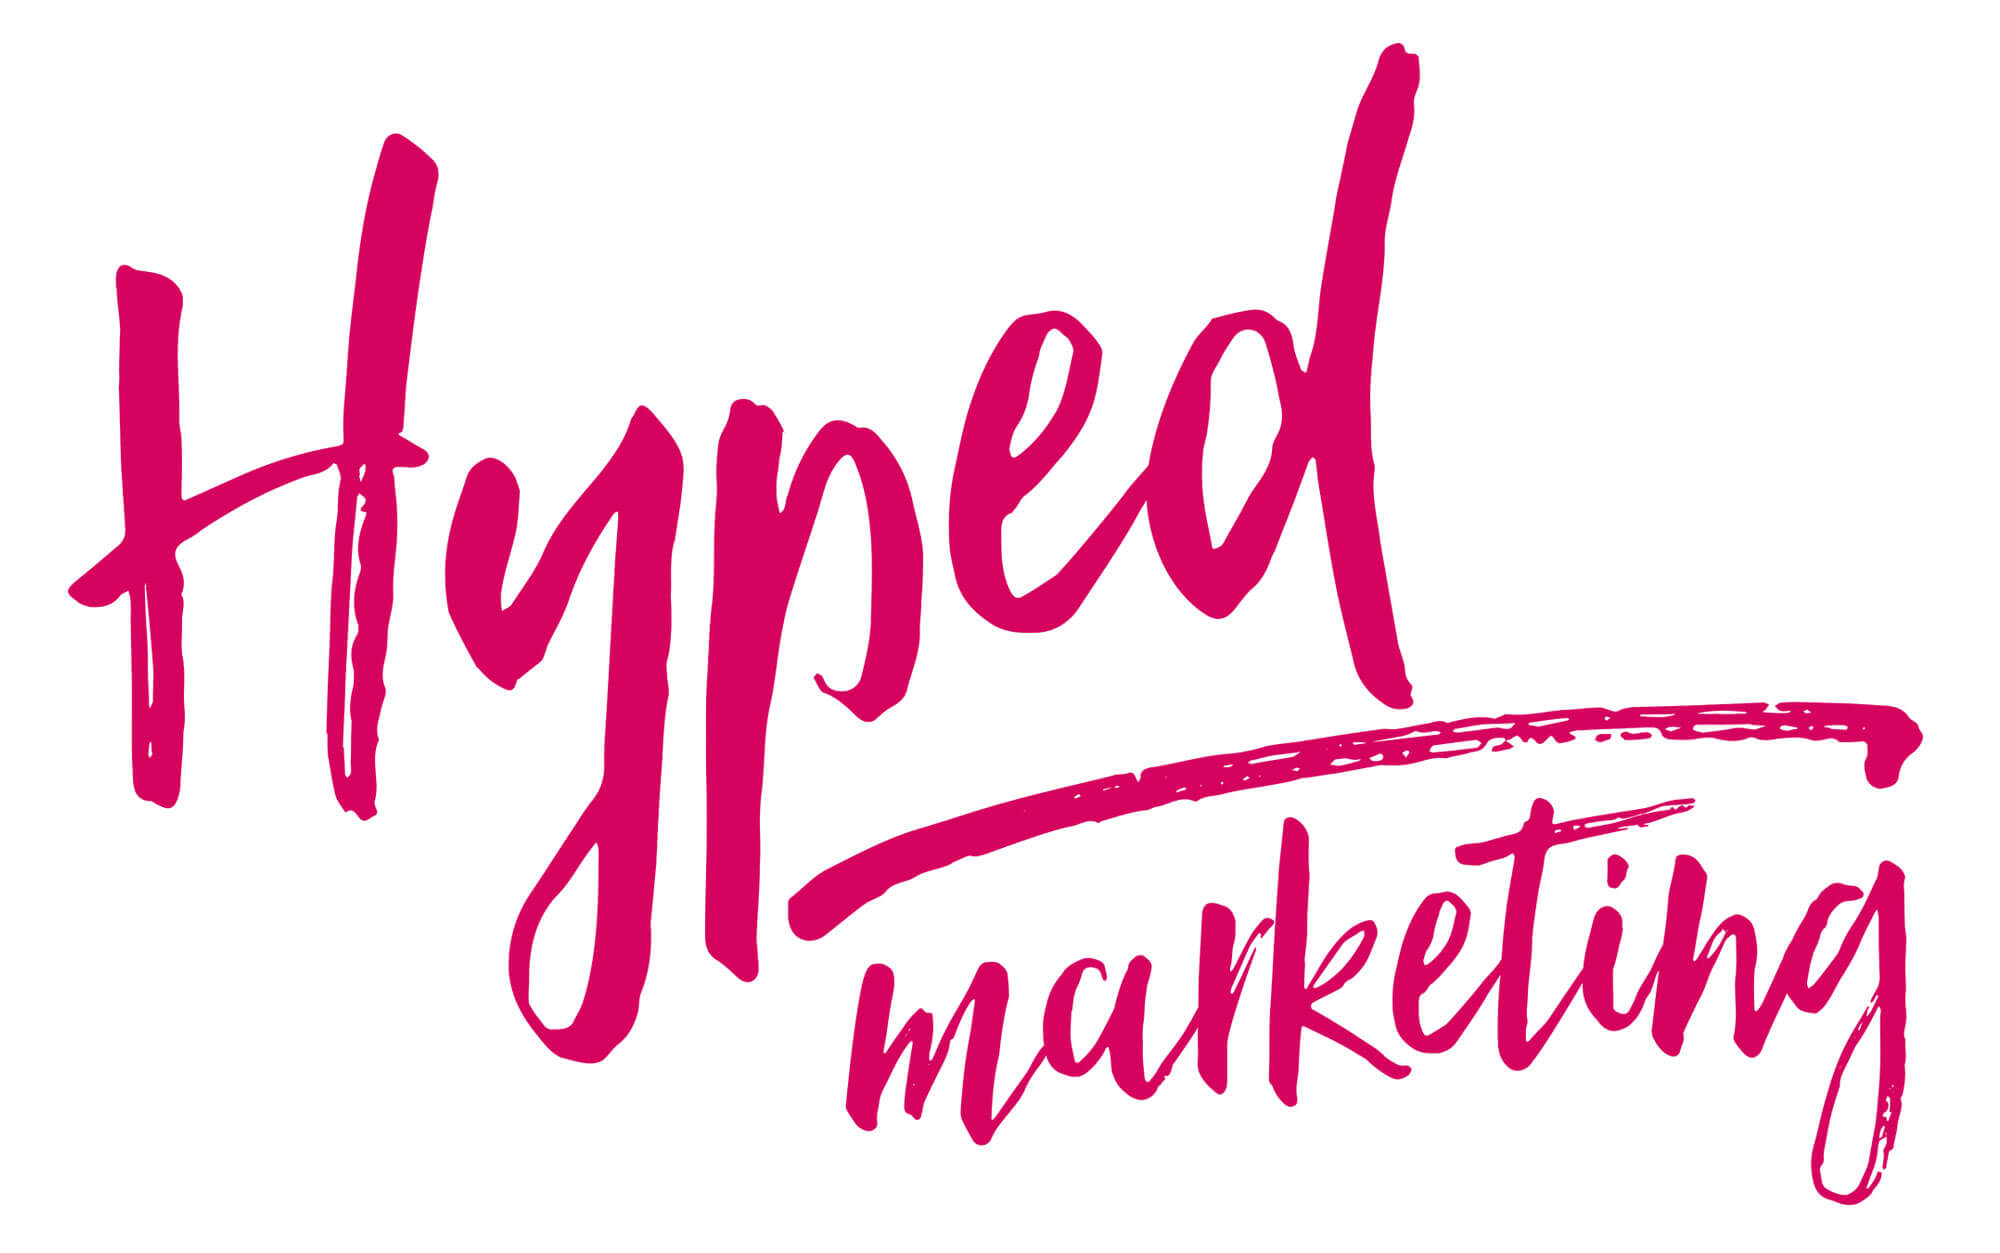 Hyped Marketing - Marketing Agency in Farnham, Surrey